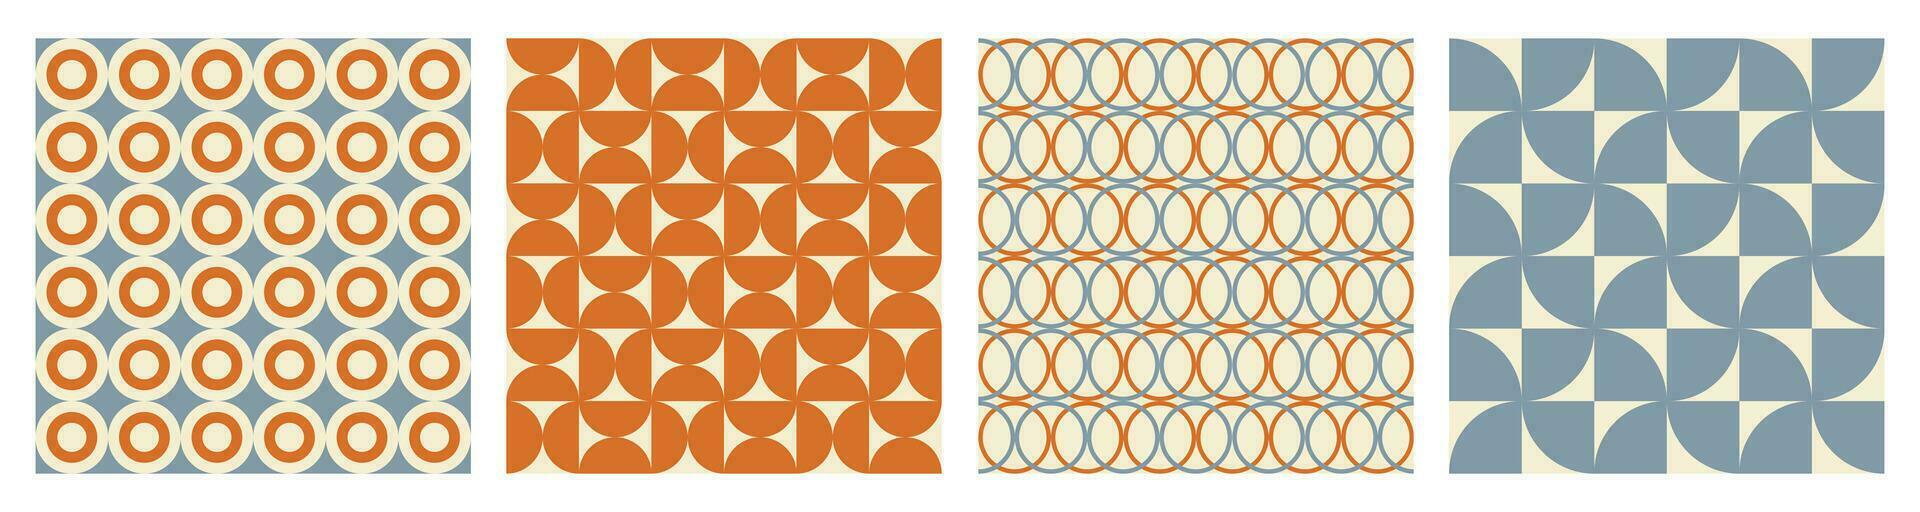 trendig retro uppsättning geometrisk sömlös mönster med färgrik halvcirklar och cirklar. modern abstrakt bakgrund. orange, beige och blå färger. vektor illustration